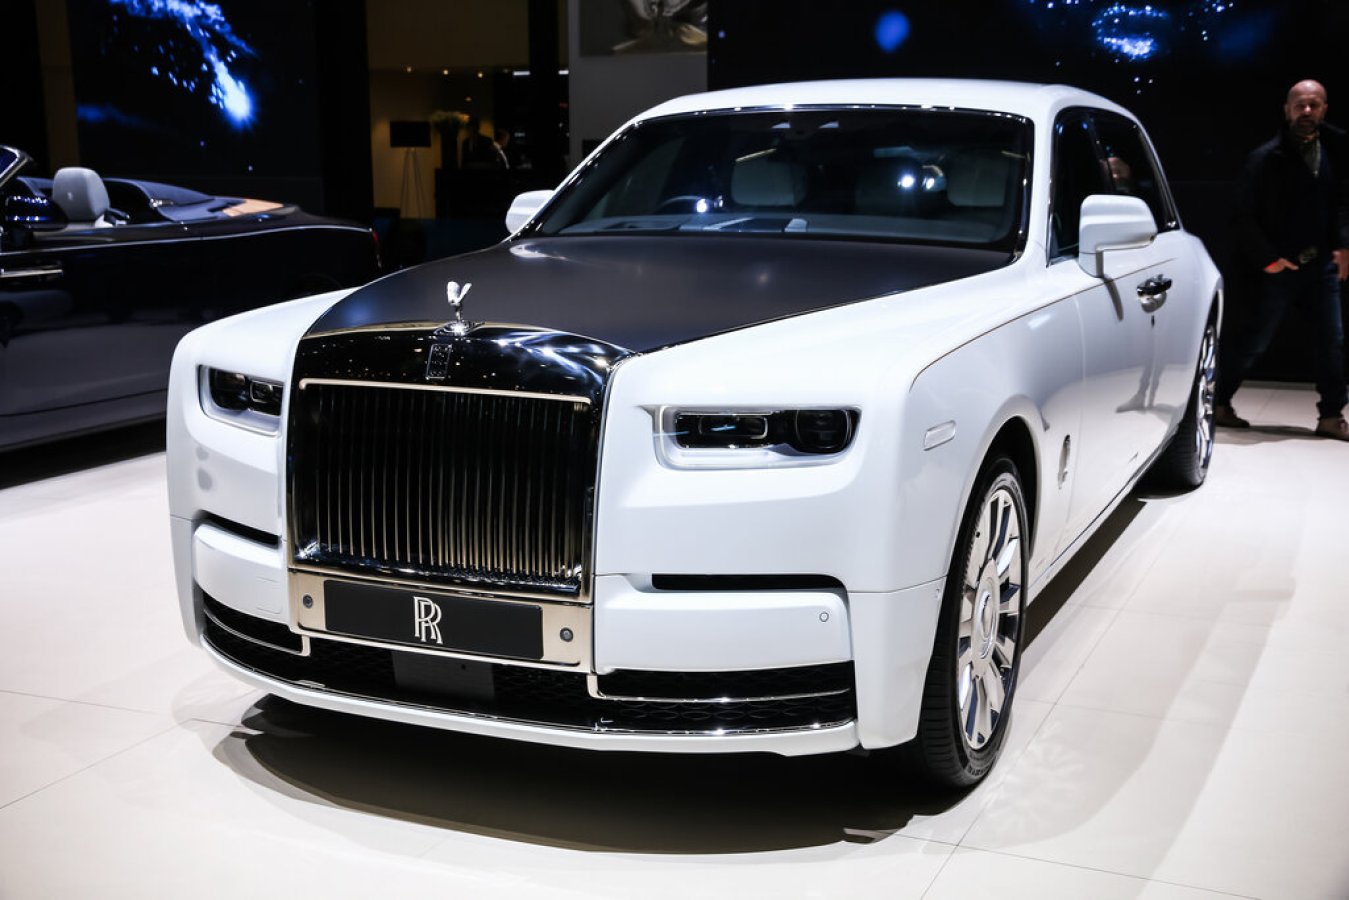 Rolls Royce: Enn síðasta orðið í lúxusakstri